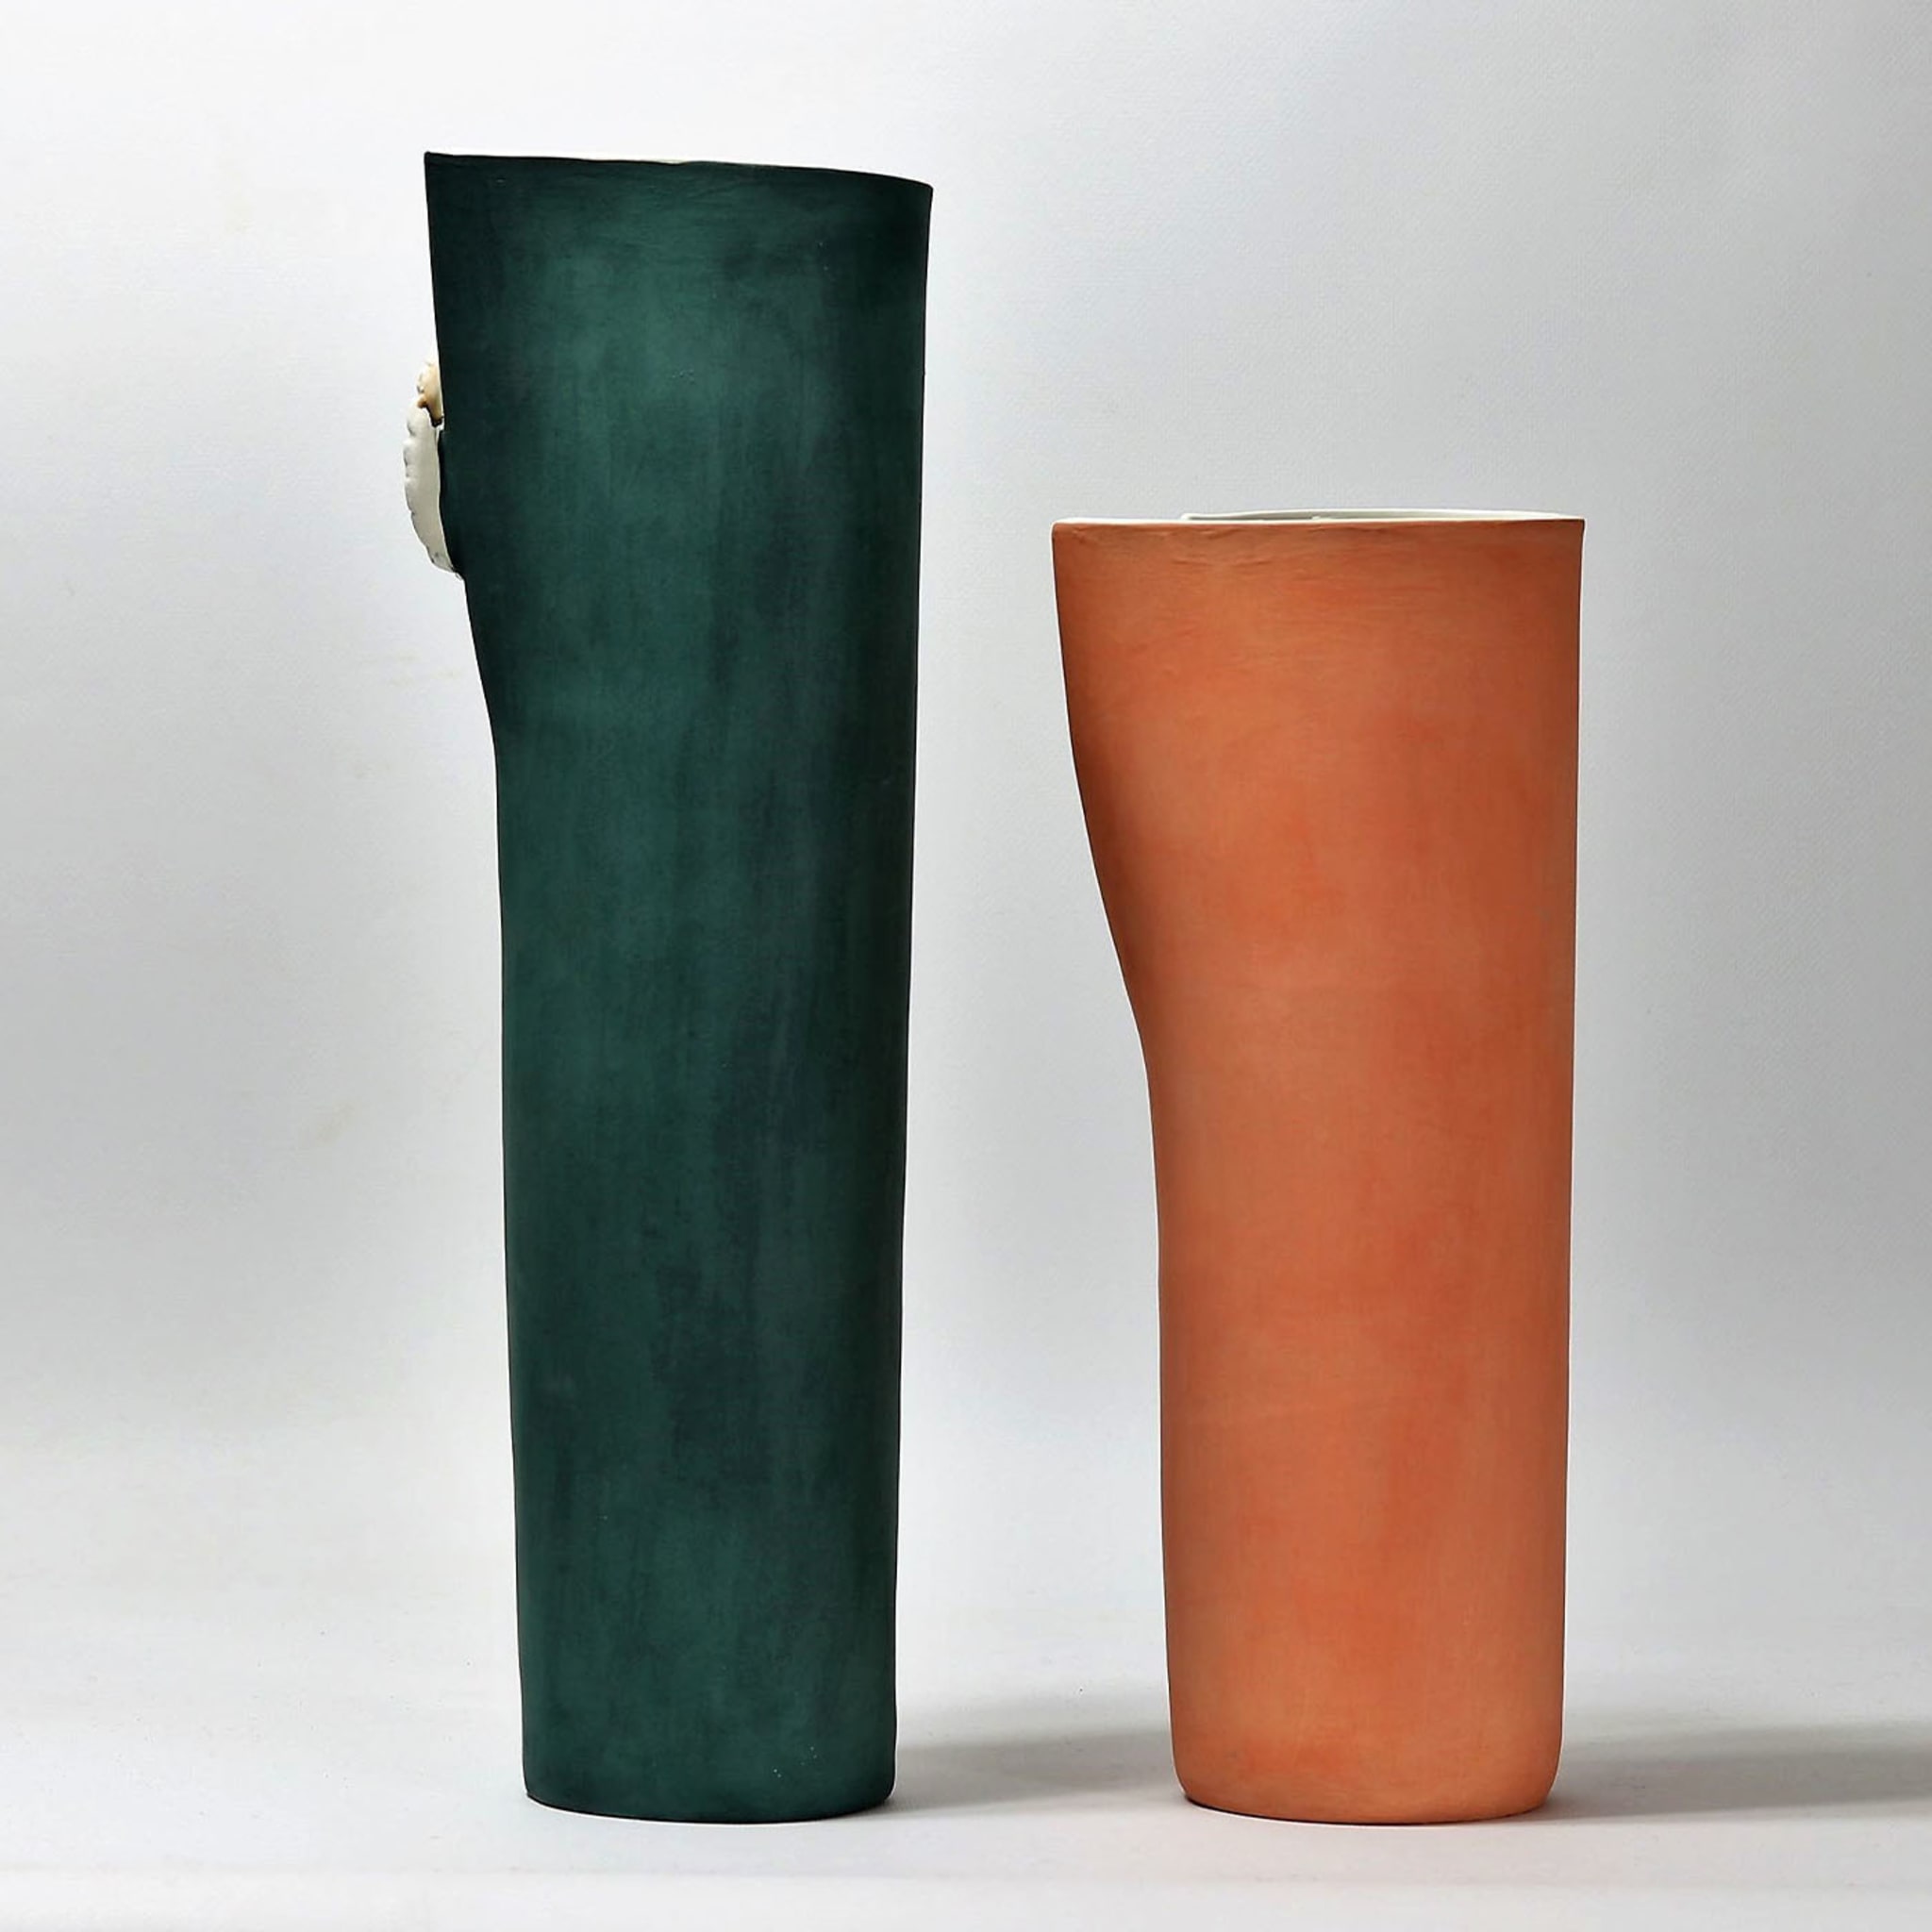 NUR Green Vase - Alternative view 2